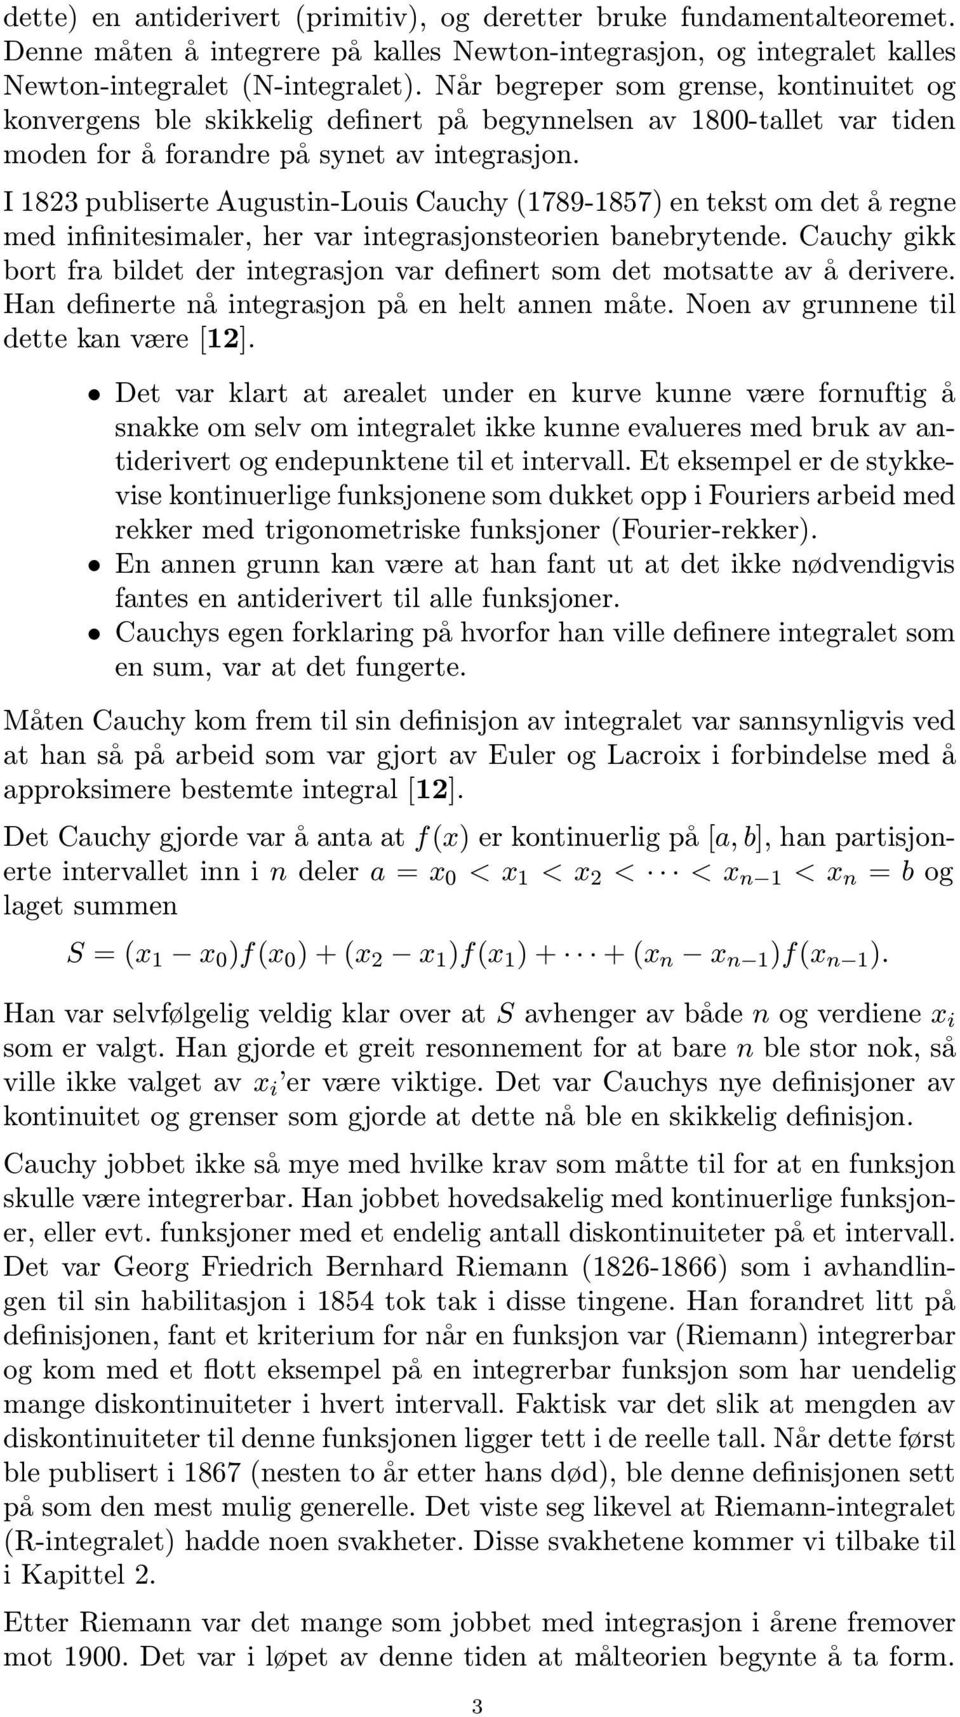 I 1823 publiserte Augustin-Louis Cuchy (1789-1857) en tekst om det å regne med infinitesimler, her vr integrsjonsteorien bnebrytende.